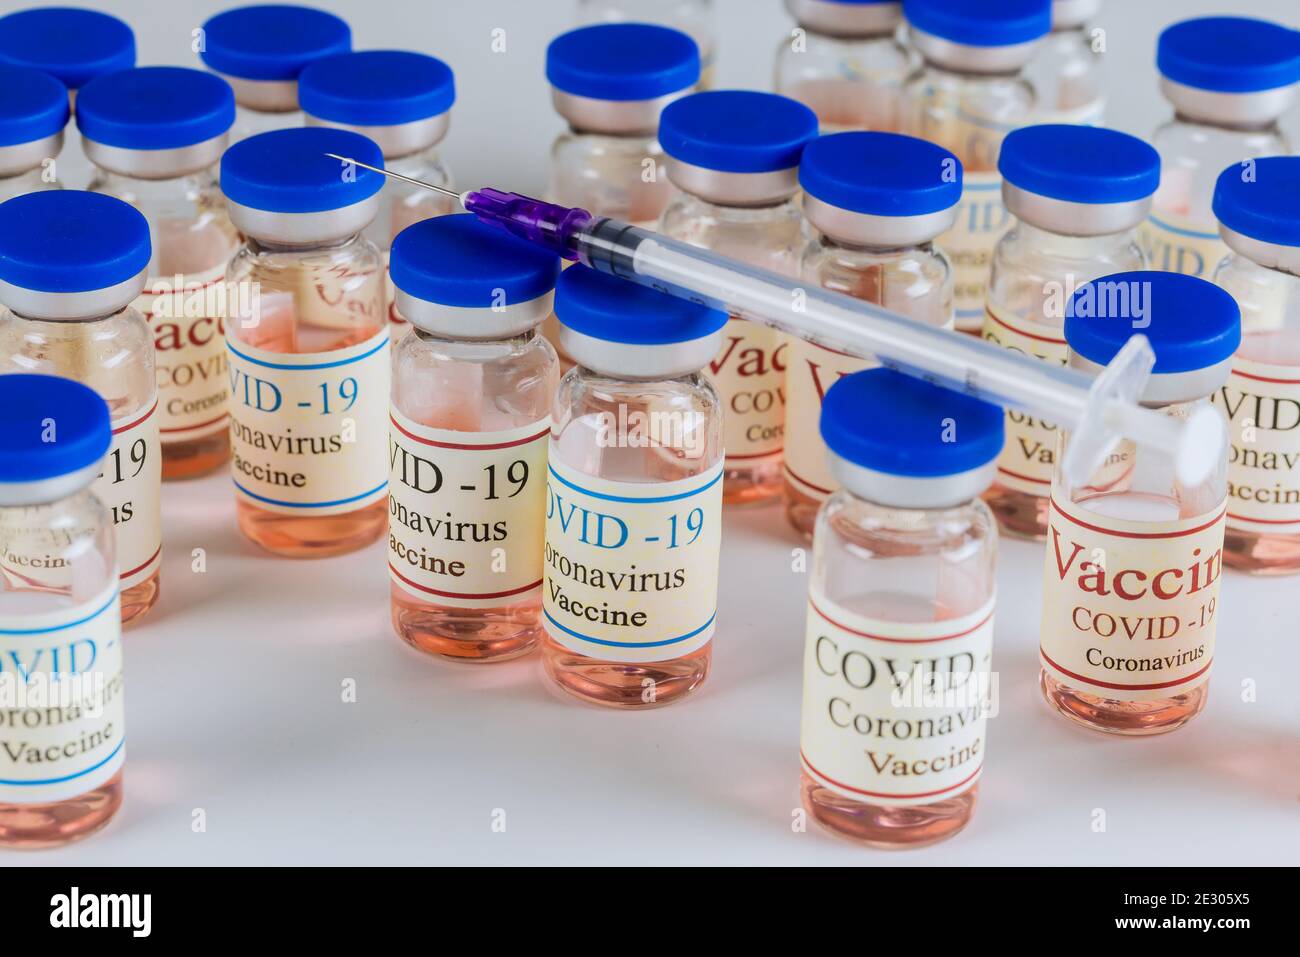 Contenitori di vetro SARS-COV-2 vaccino coronavirus COVID-19 per combattere la pandemia di coronavirus. Foto Stock